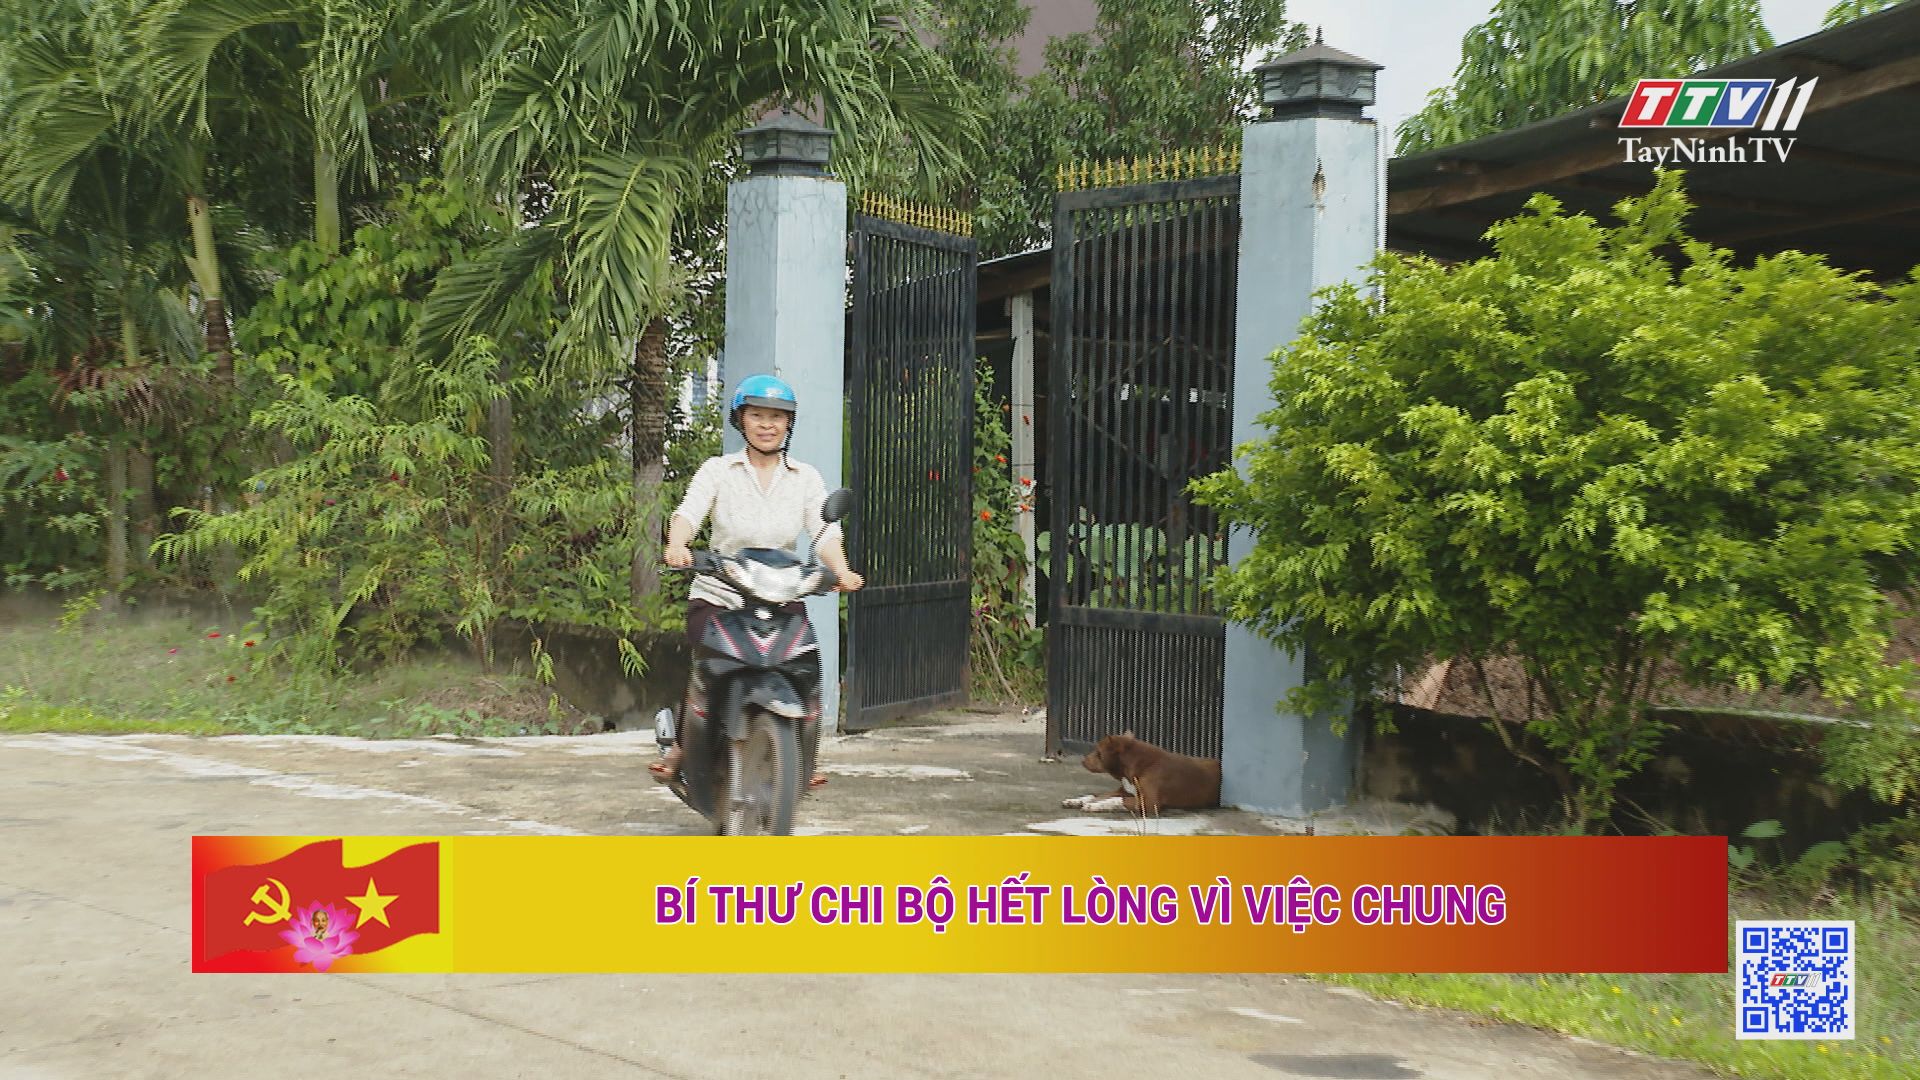 Bí thư Chi bộ hết lòng vì việc chung | Học tập và làm theo tư tưởng, đạo đức, phong cách Hồ Chí Minh | TayNinhTV